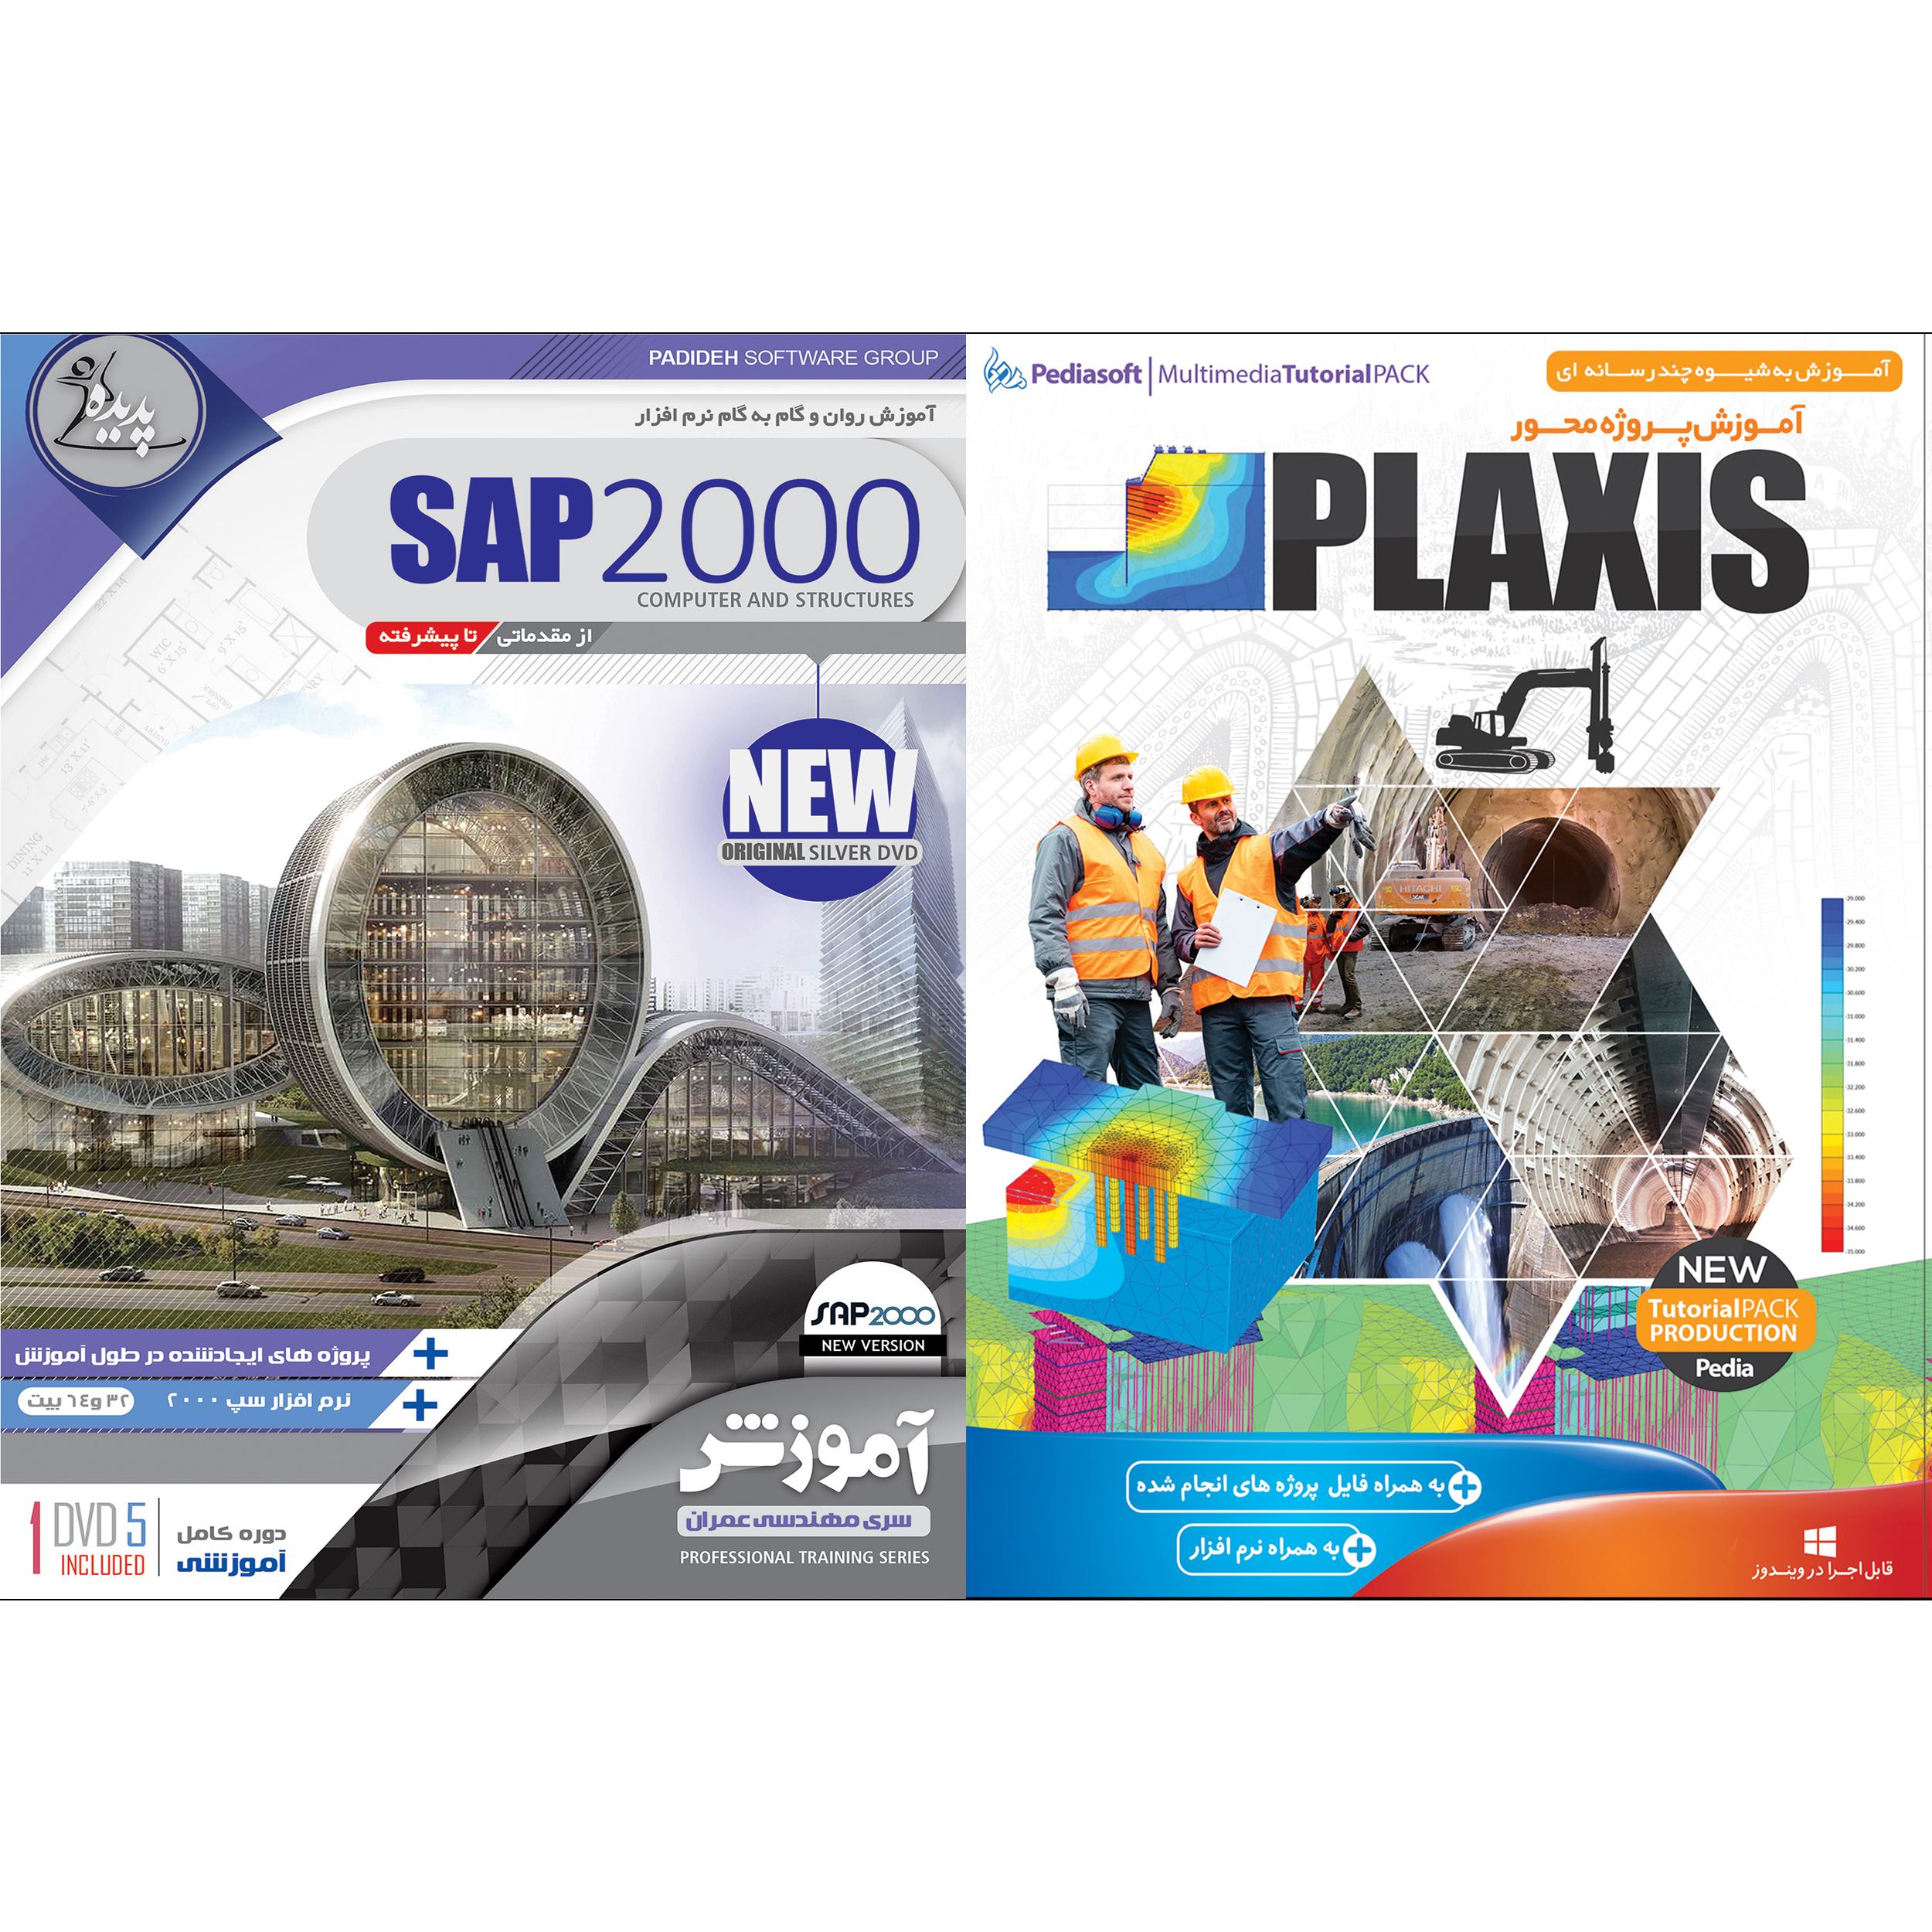 نرم افزار آموزش PLAXIS نشر پدیا سافت به همراه نرم افزار آموزش SAP 2000 نشر پدیده